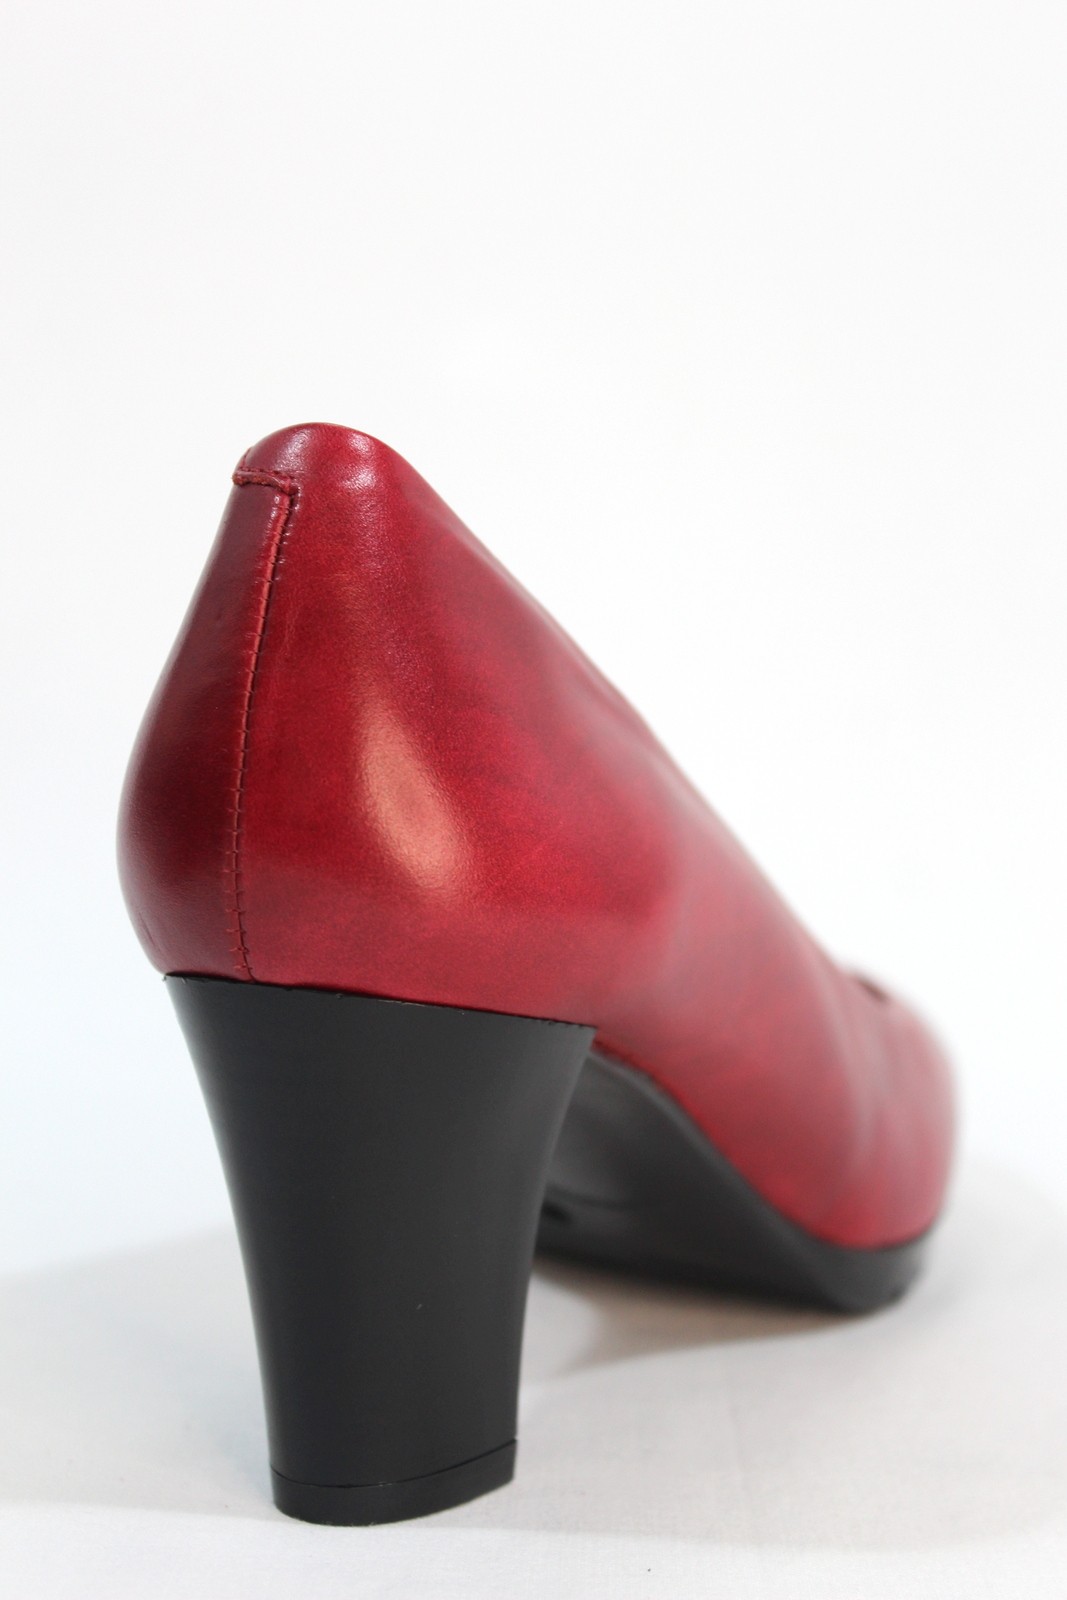 DESIREÉ - Zapato salón piel confortable, ancho 5 cm. Granate. Desireé.| Calzados Losada